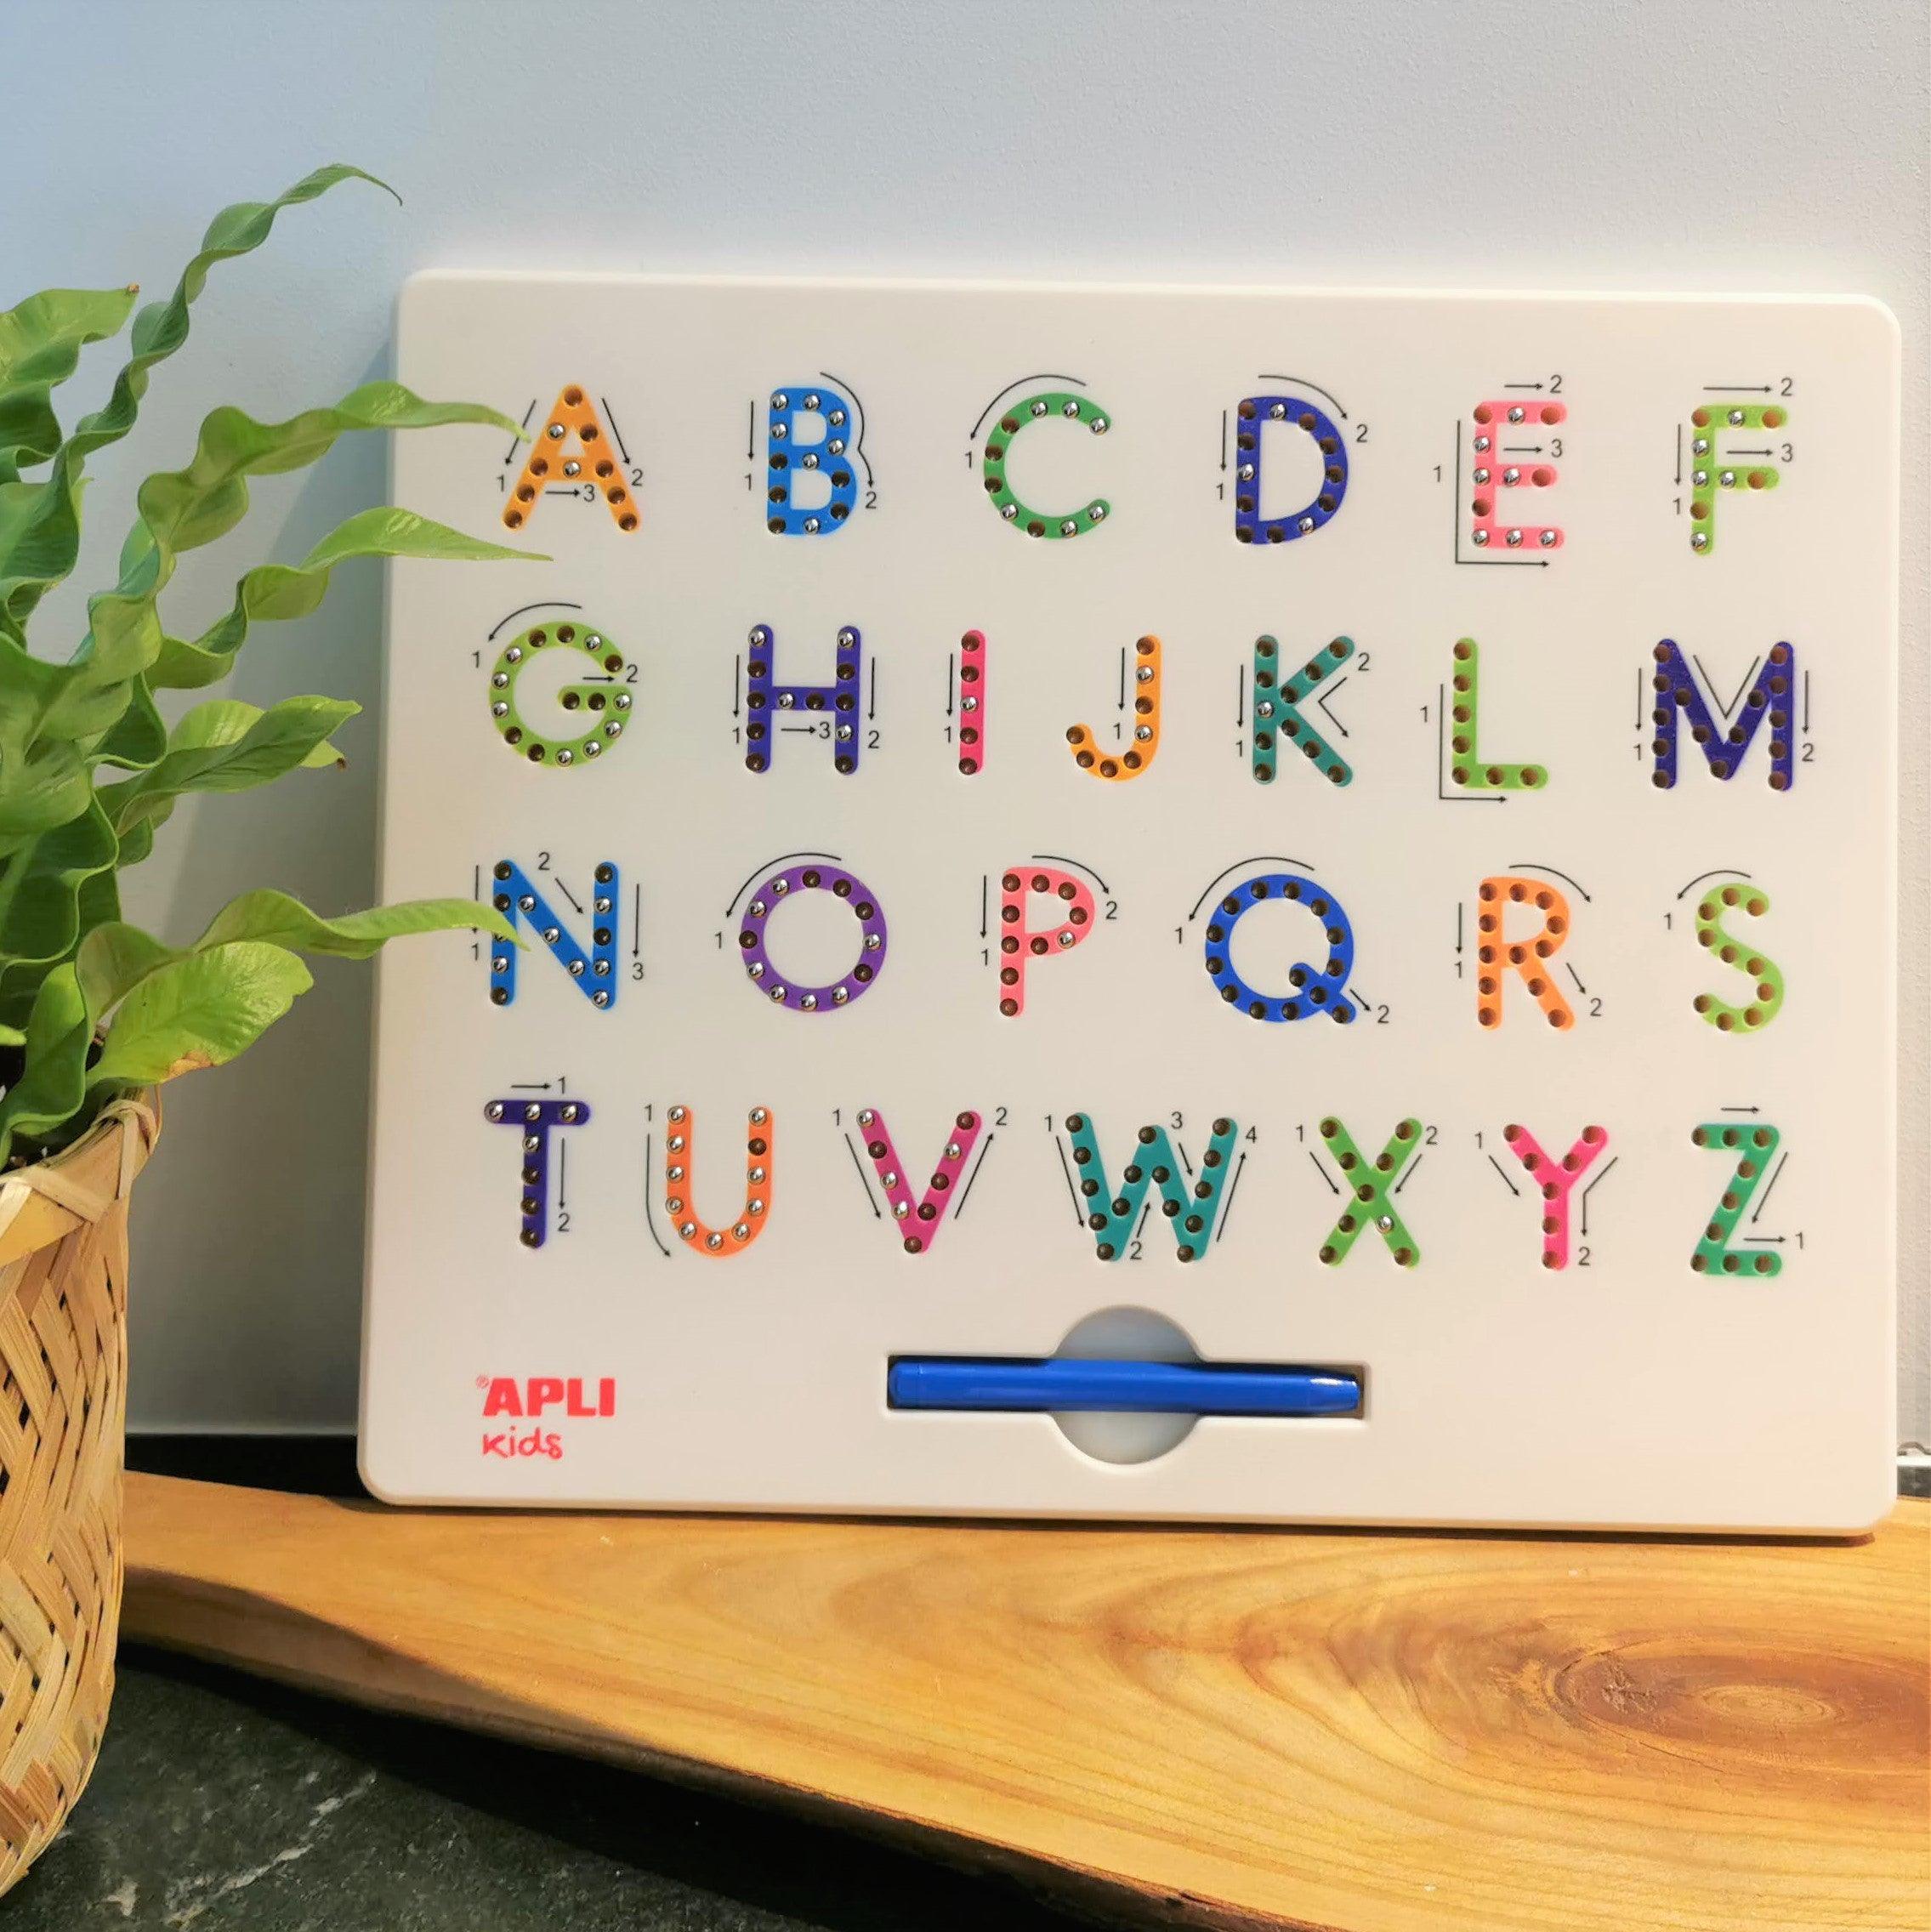 Appli gyerekek: Mágneses tábla ABC mágneses betűk rajzolásához